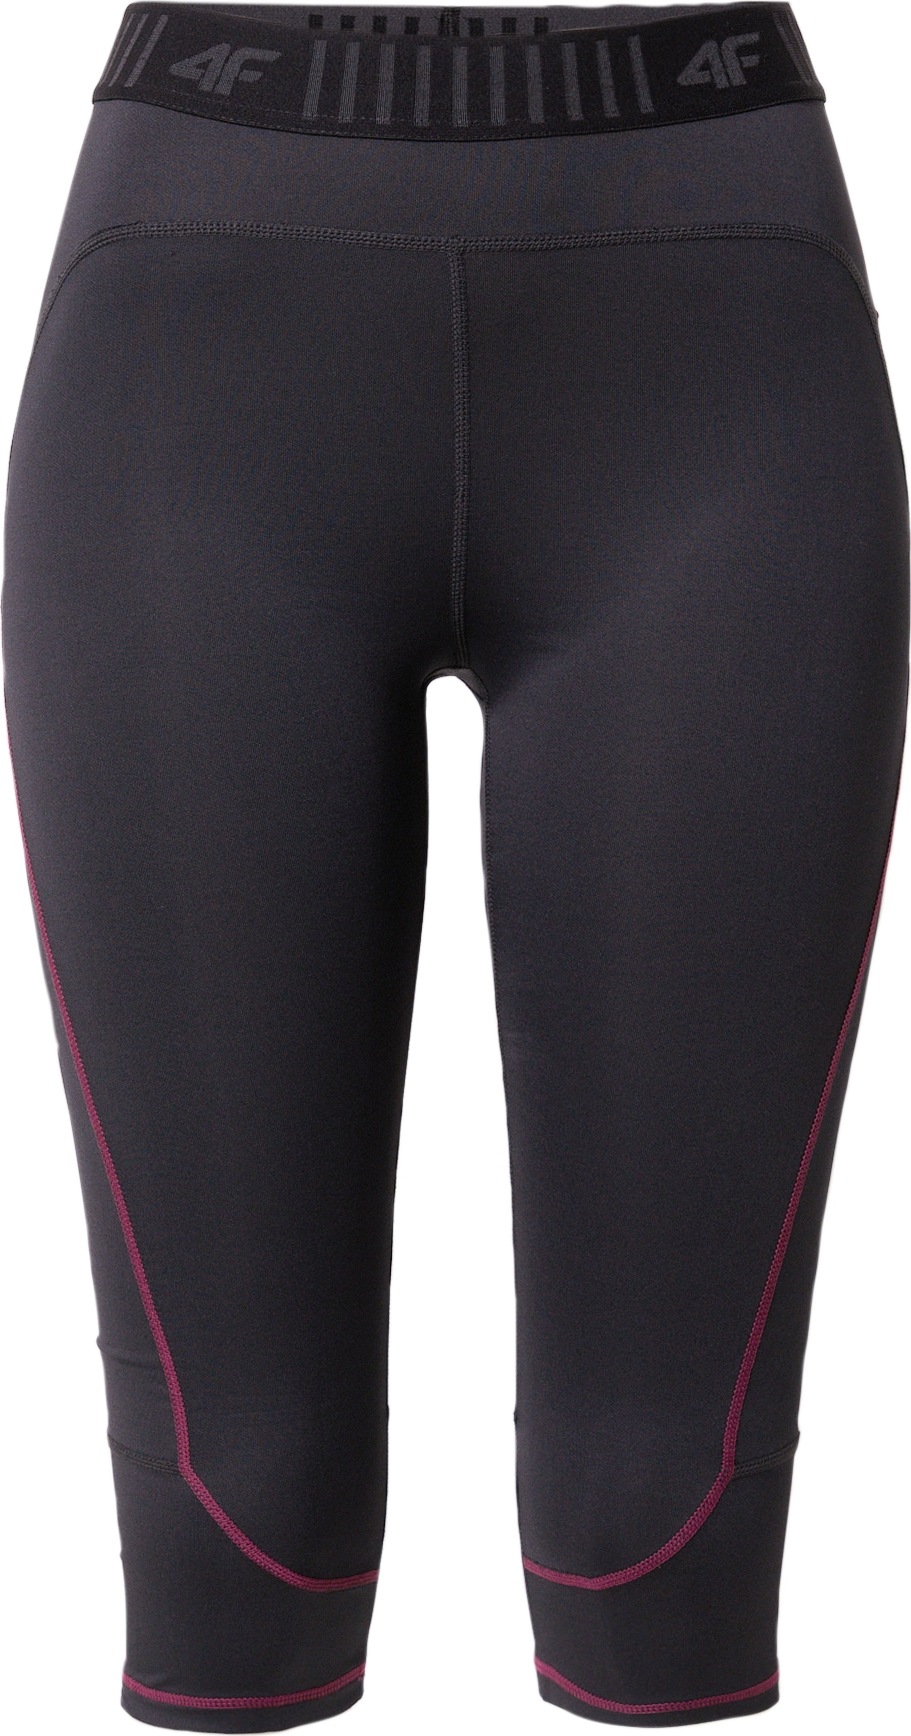 4F Sportovní spodní prádlo antracitová / pink / černá